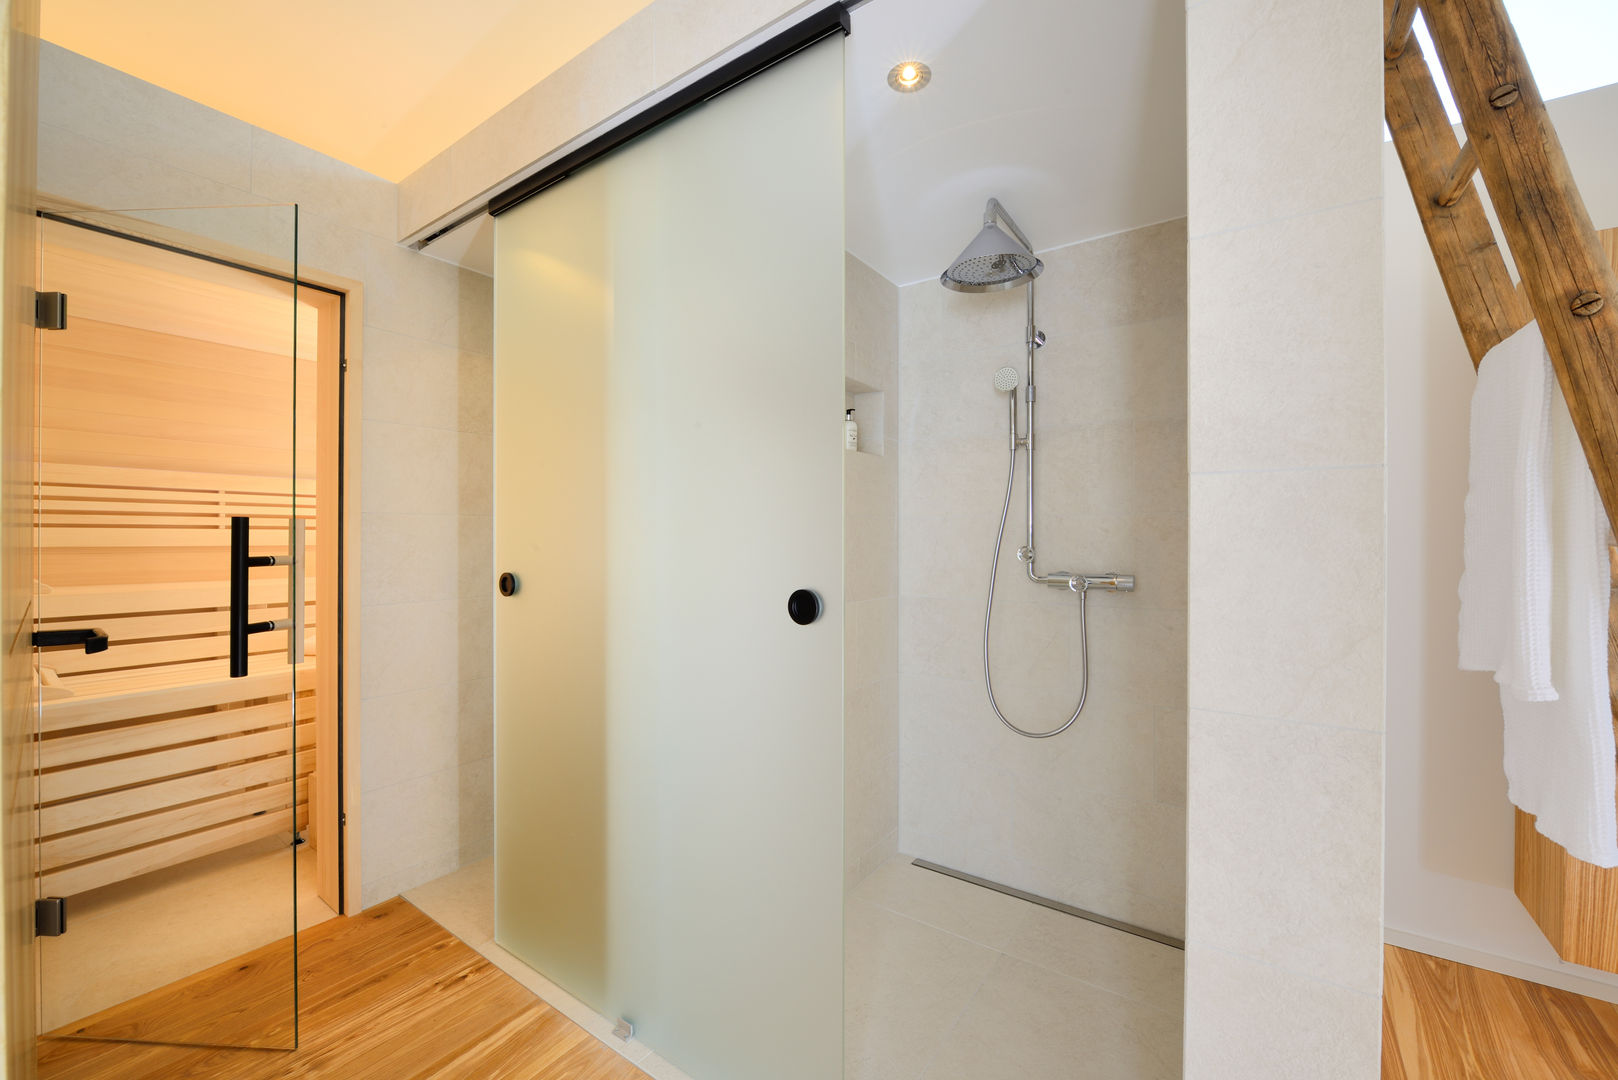 Alpenchic, Bau-Fritz GmbH & Co. KG Bau-Fritz GmbH & Co. KG Modern style bathrooms Bathtubs & showers